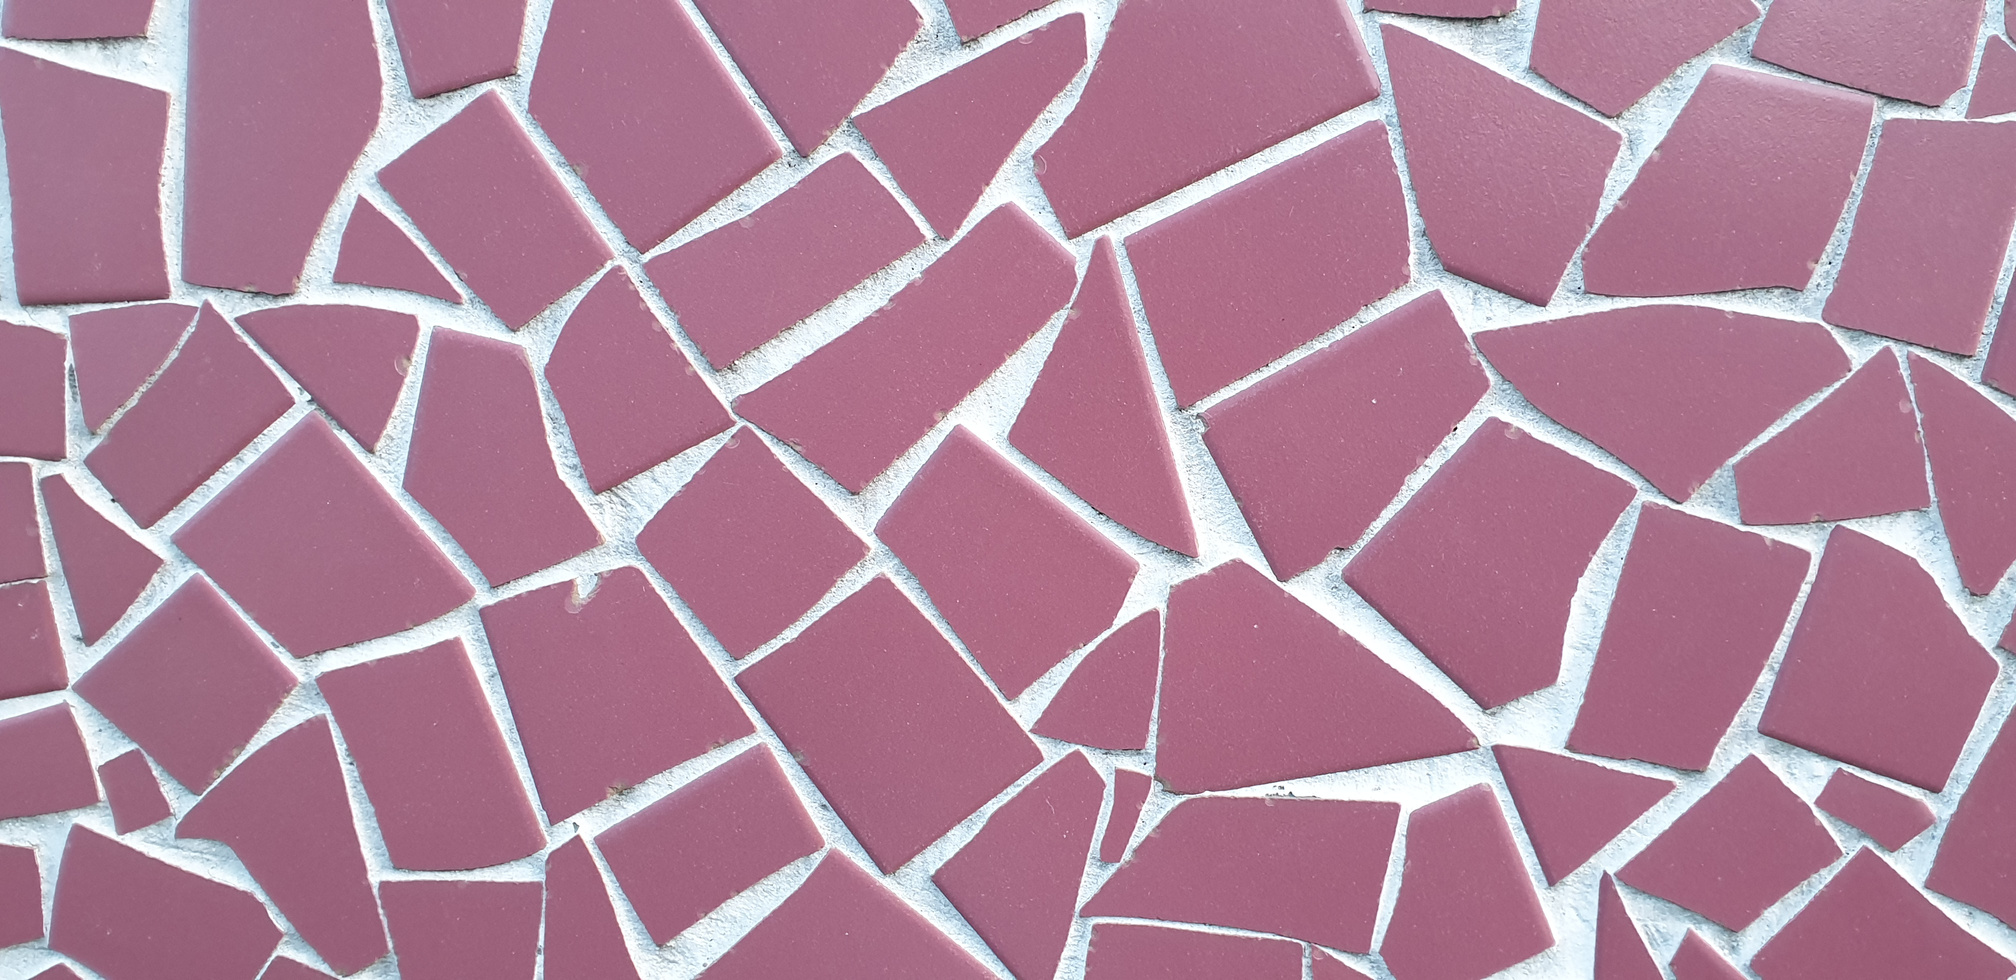 Mosaic tile_pink